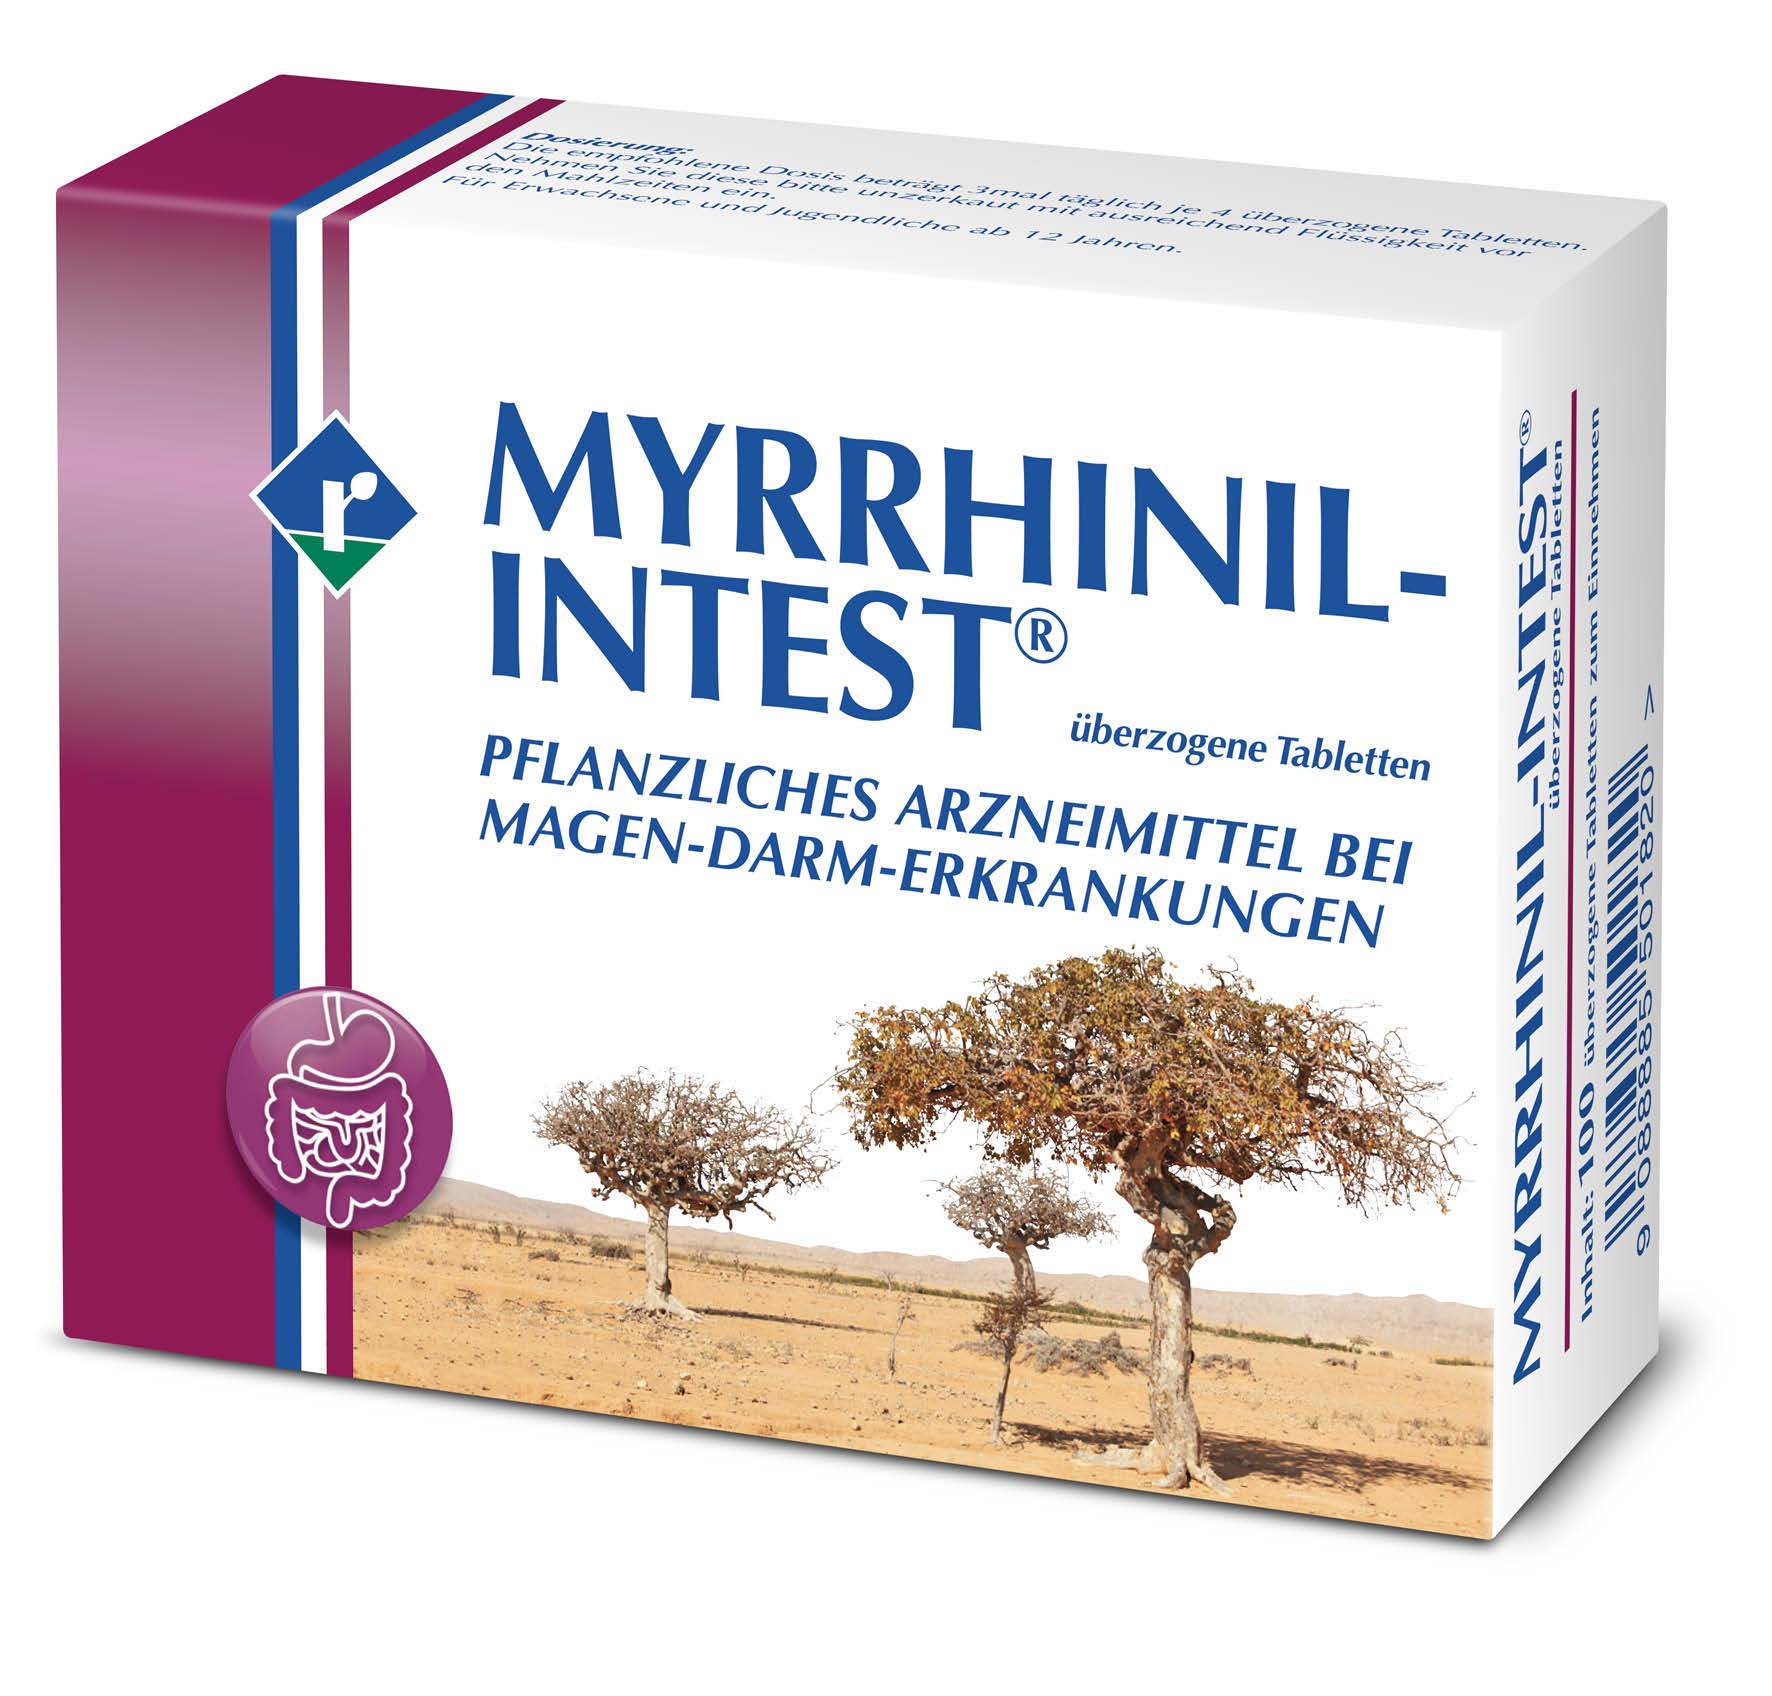 Myrrhinil-Intest - überzogene Tabletten